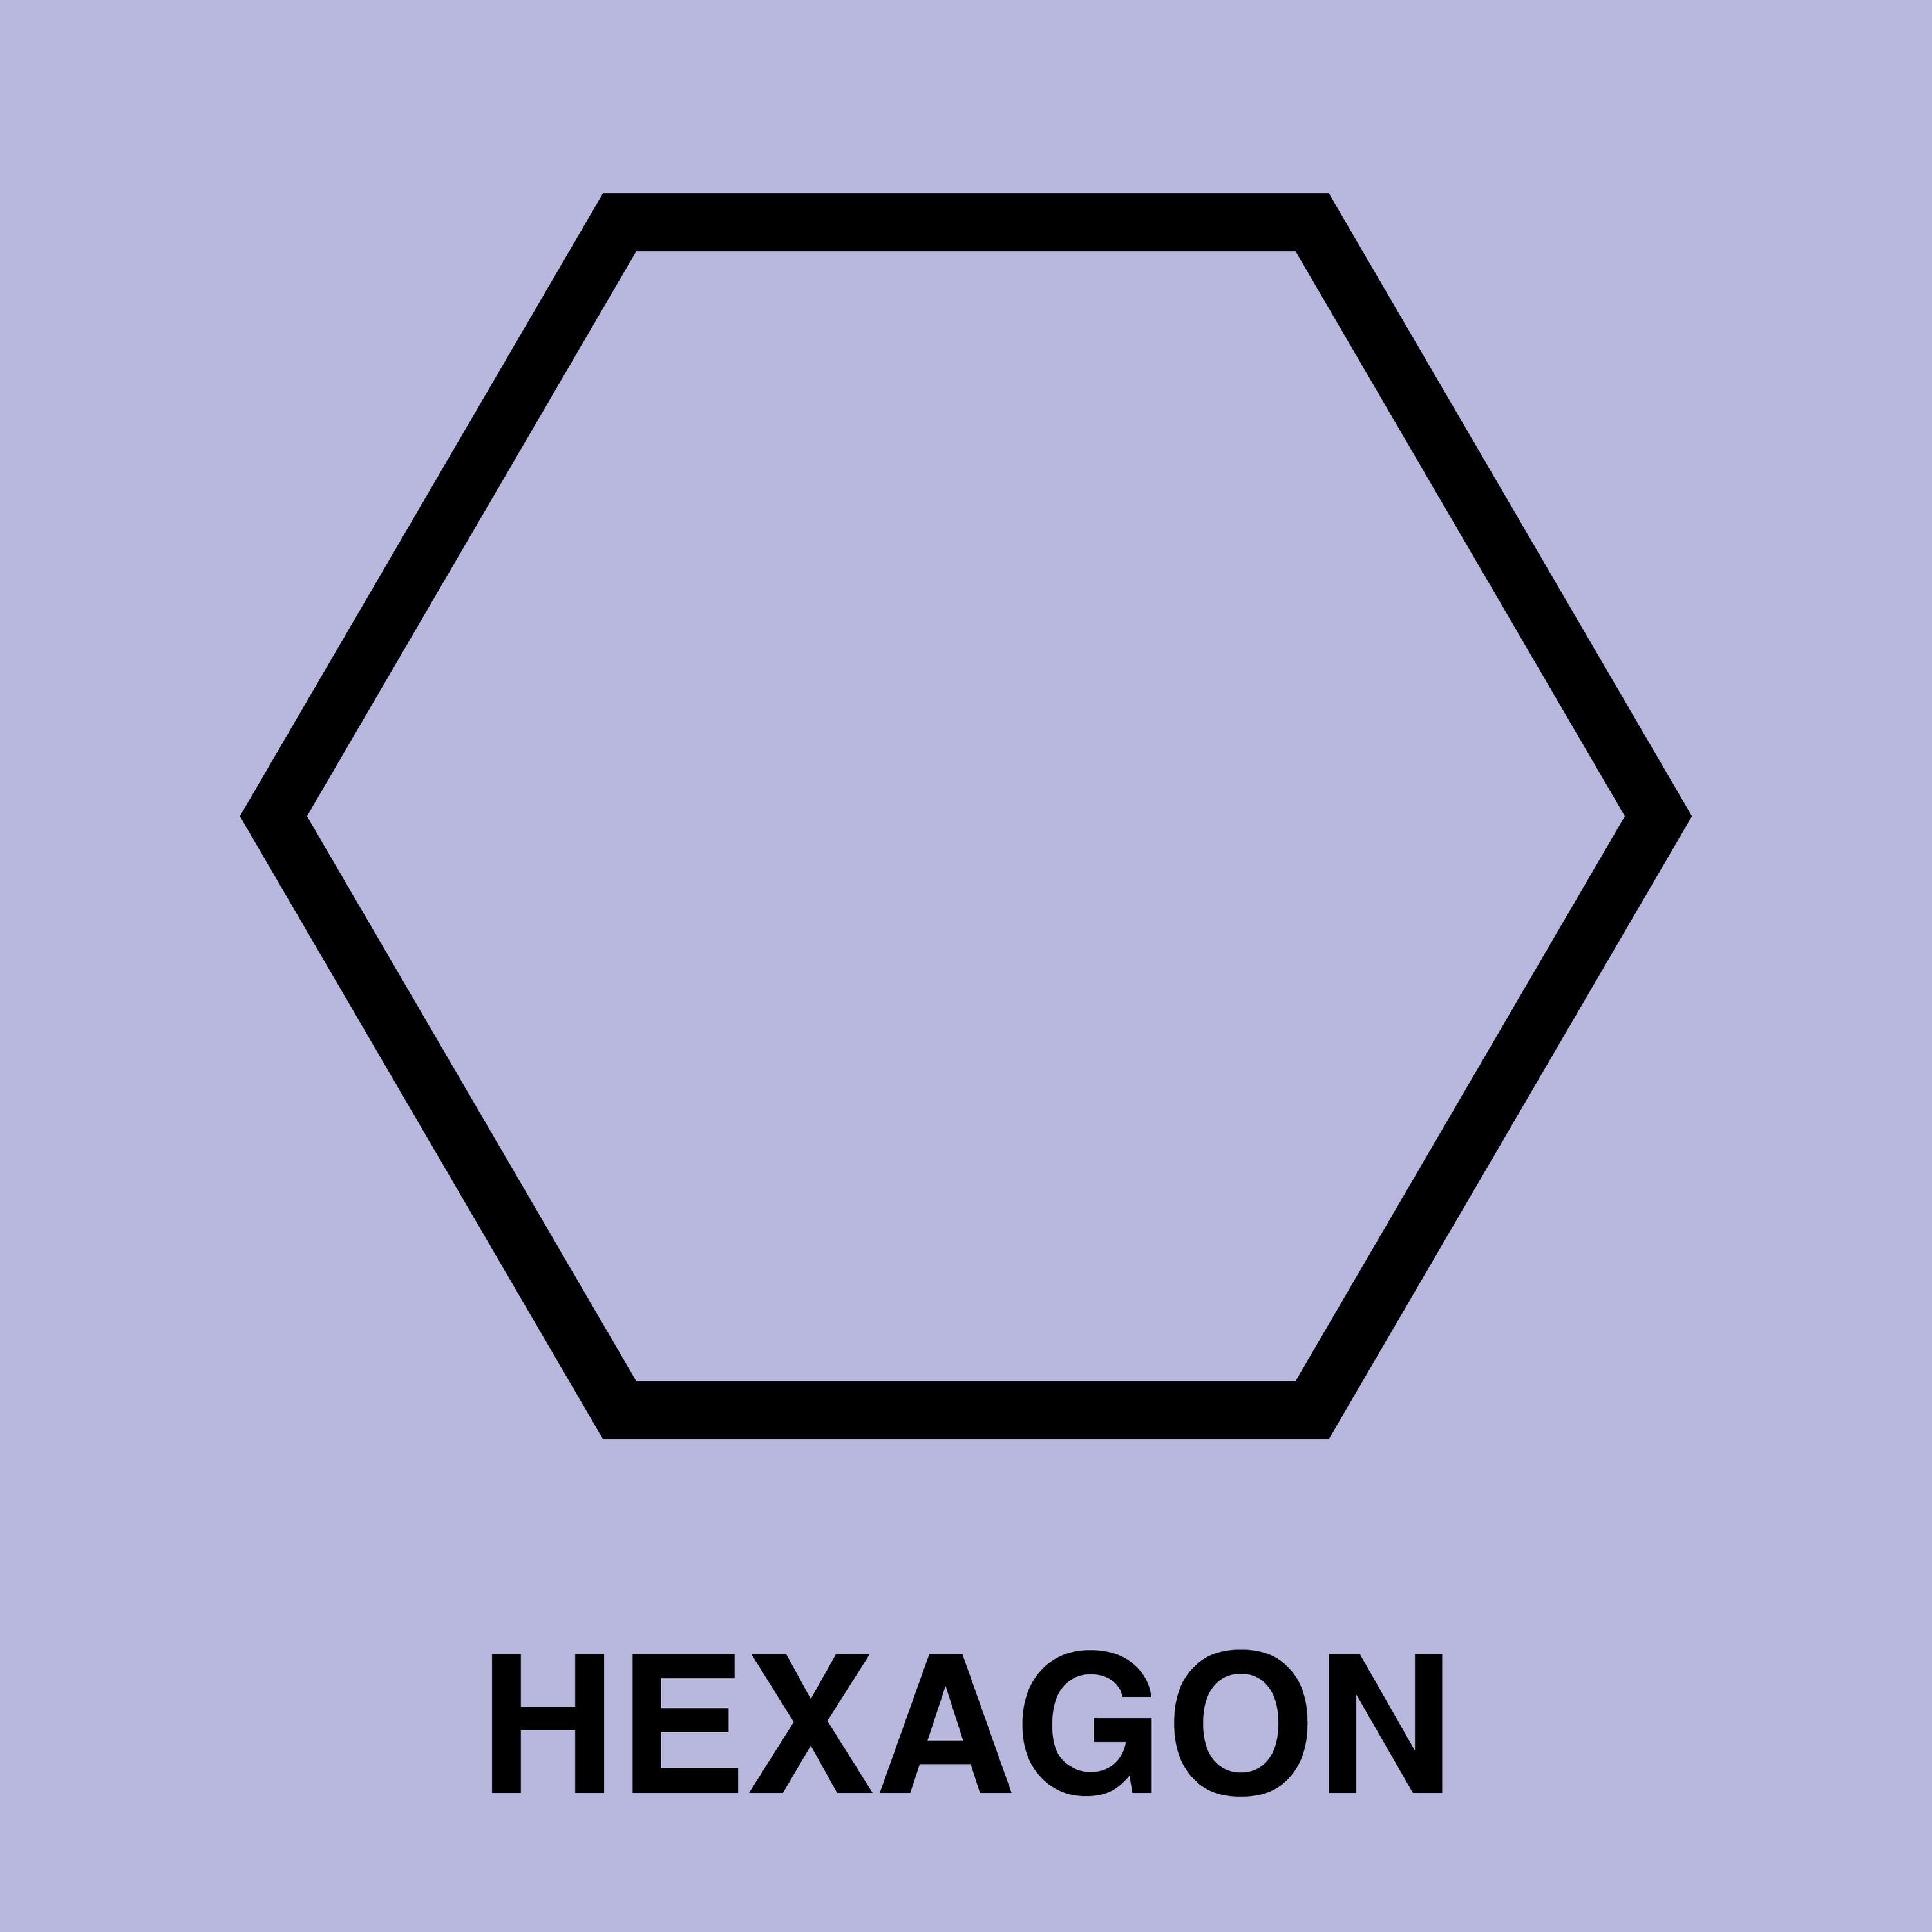 Hexagon Song Video - YouTube